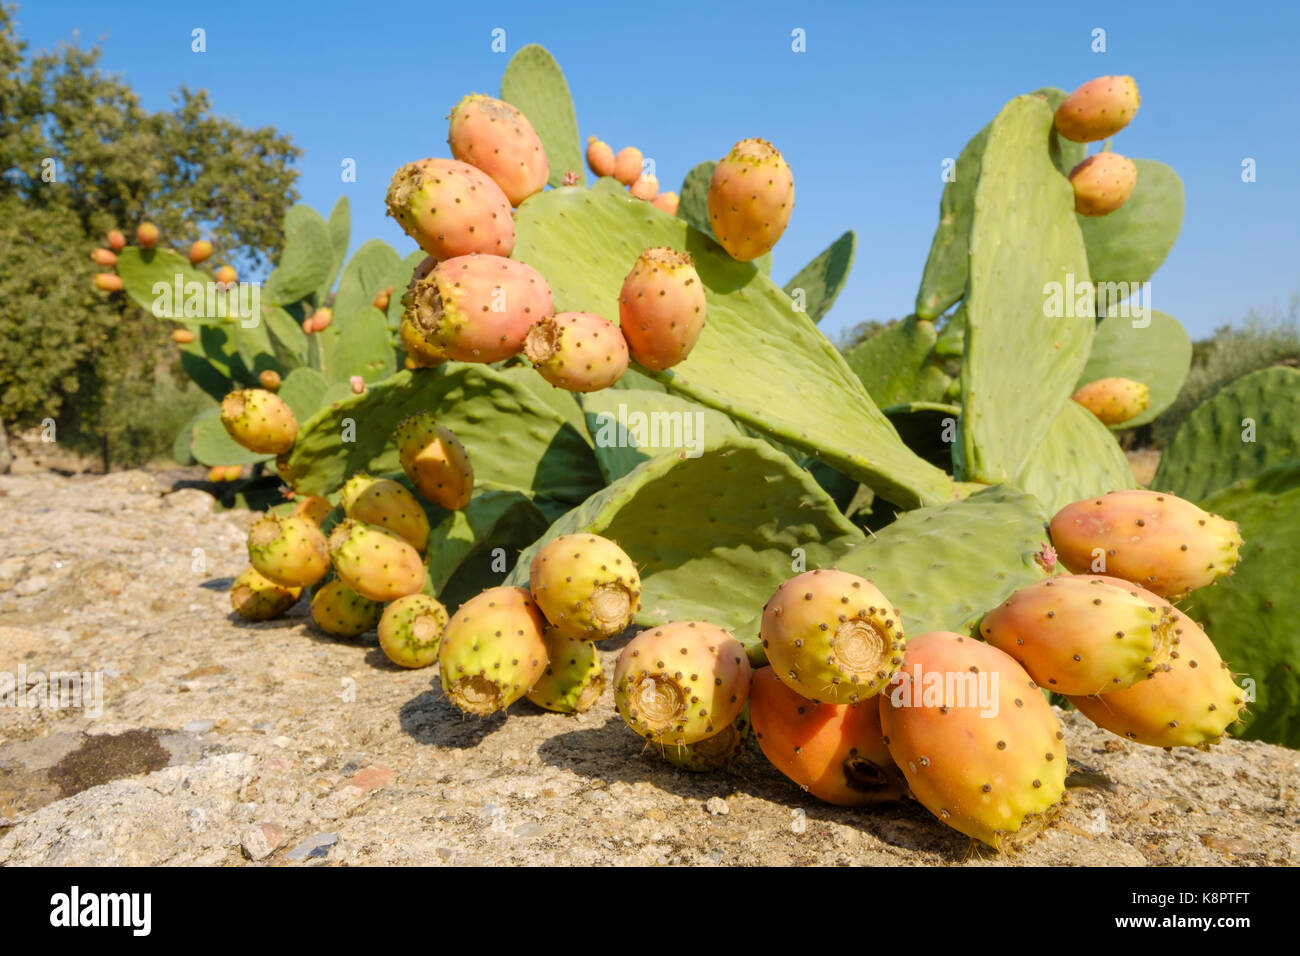 In der Nähe von reifenden Kaktus Frucht mit stacheligen Nadeln und dicke saftige grüne Blätter Stockfoto